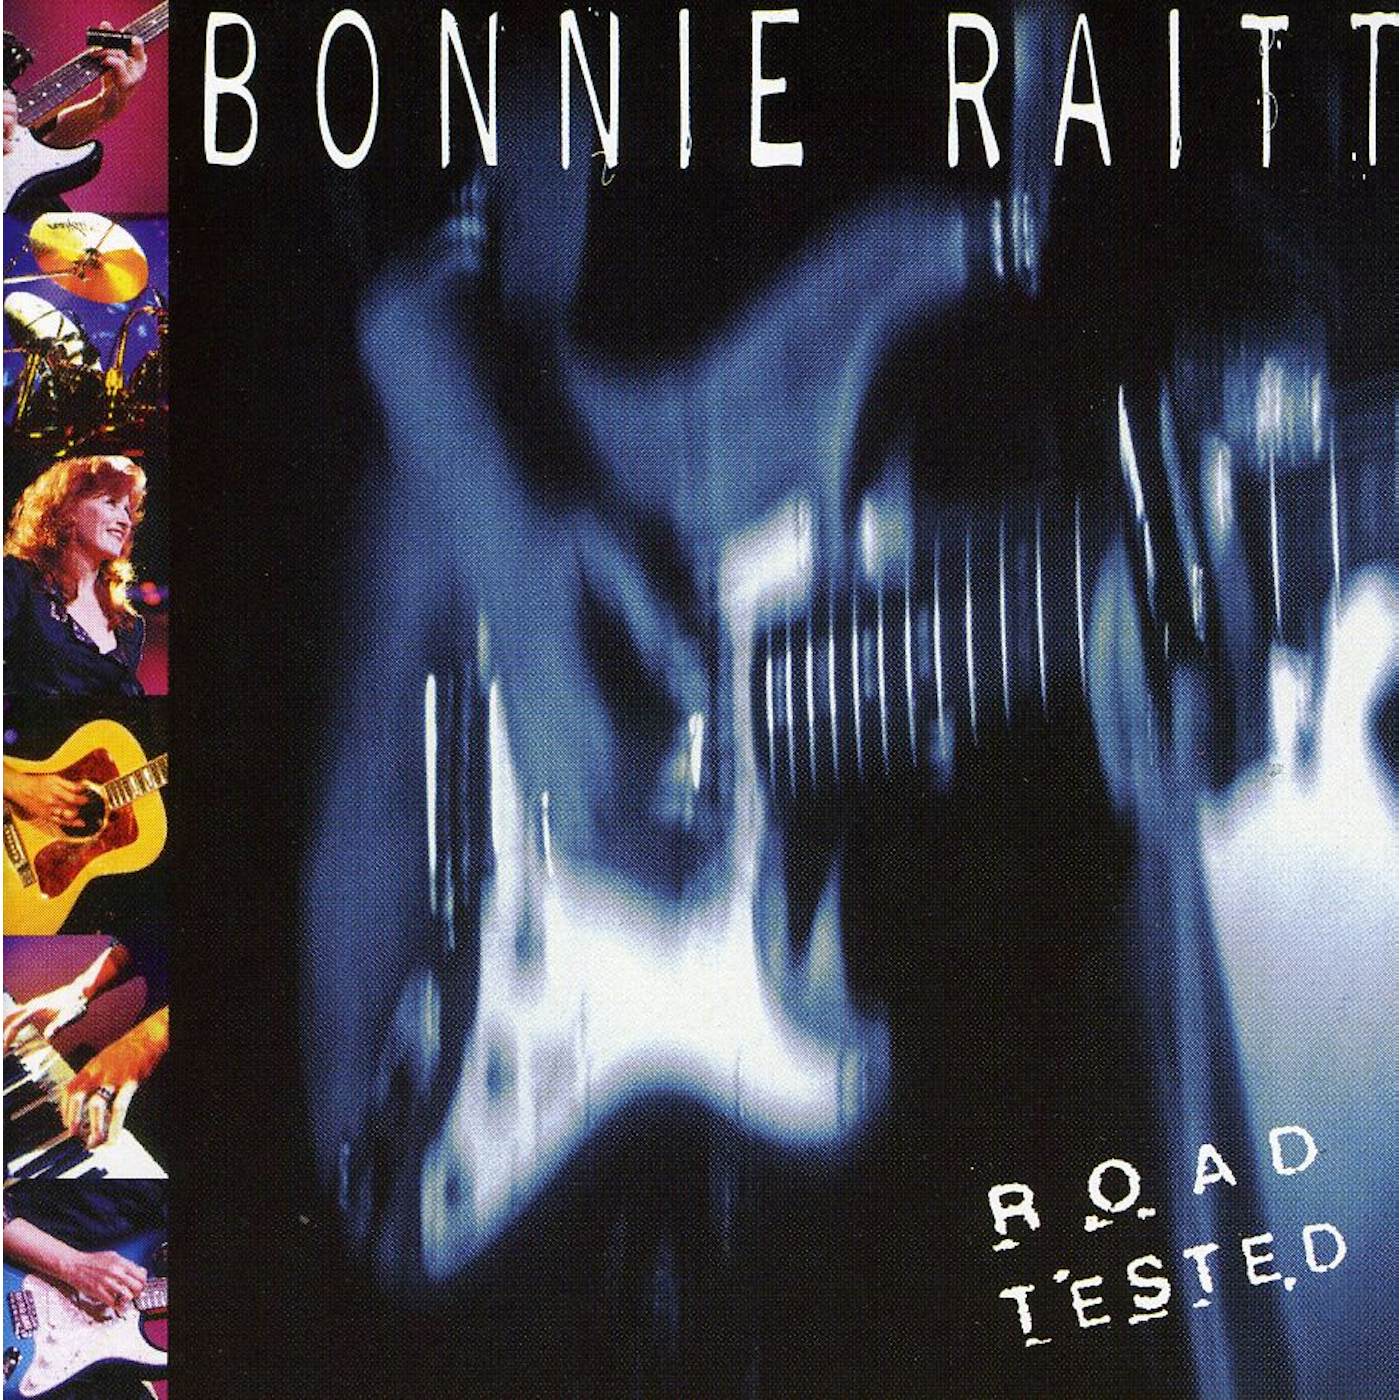 Bonnie Raitt ROAD TESTED CD